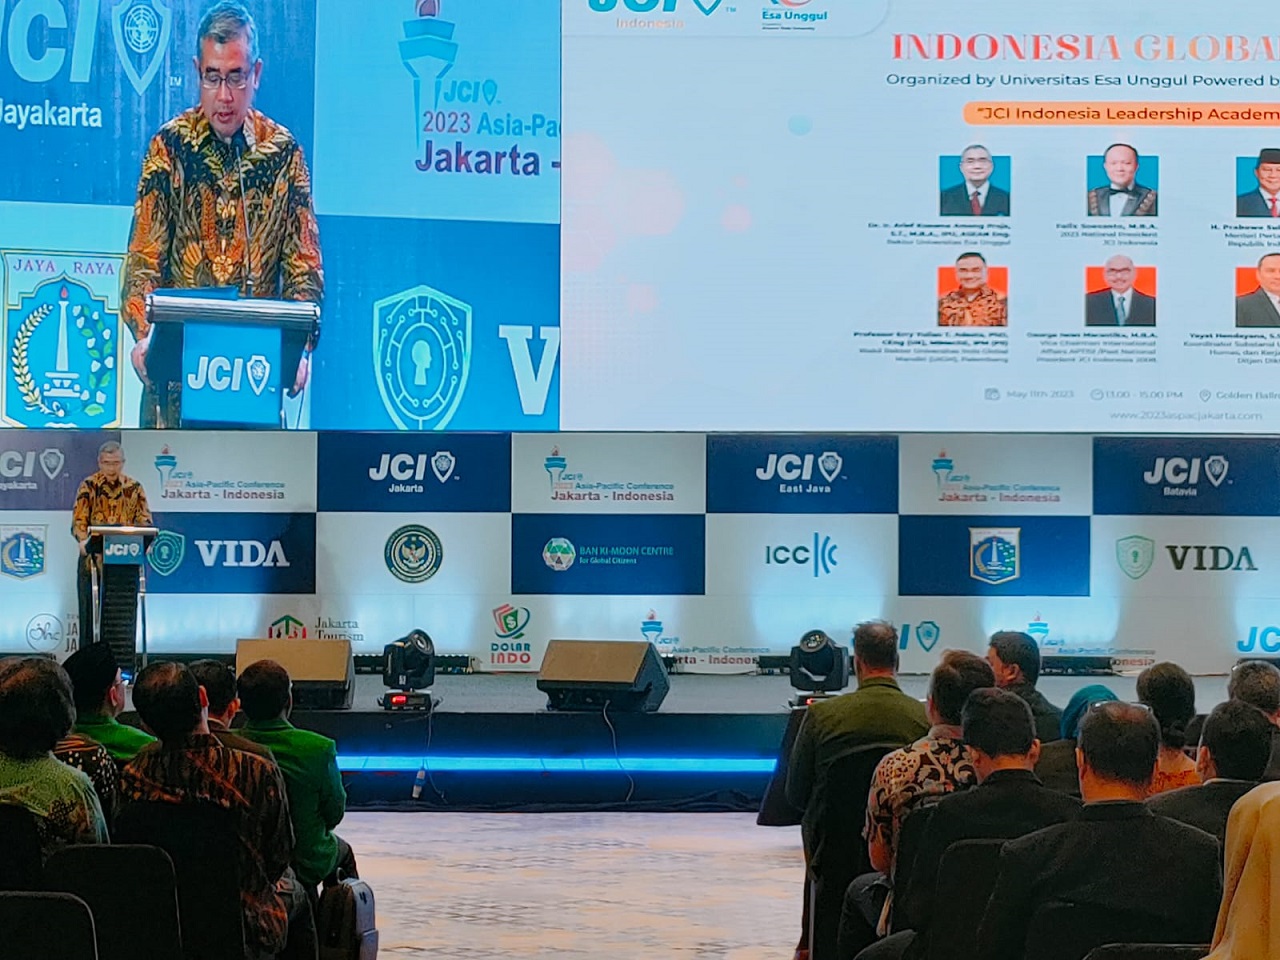 Spesial Tahun ini Universitas Esa Unggul Berkolaborasi dengan Junior Chamber International Indonesia